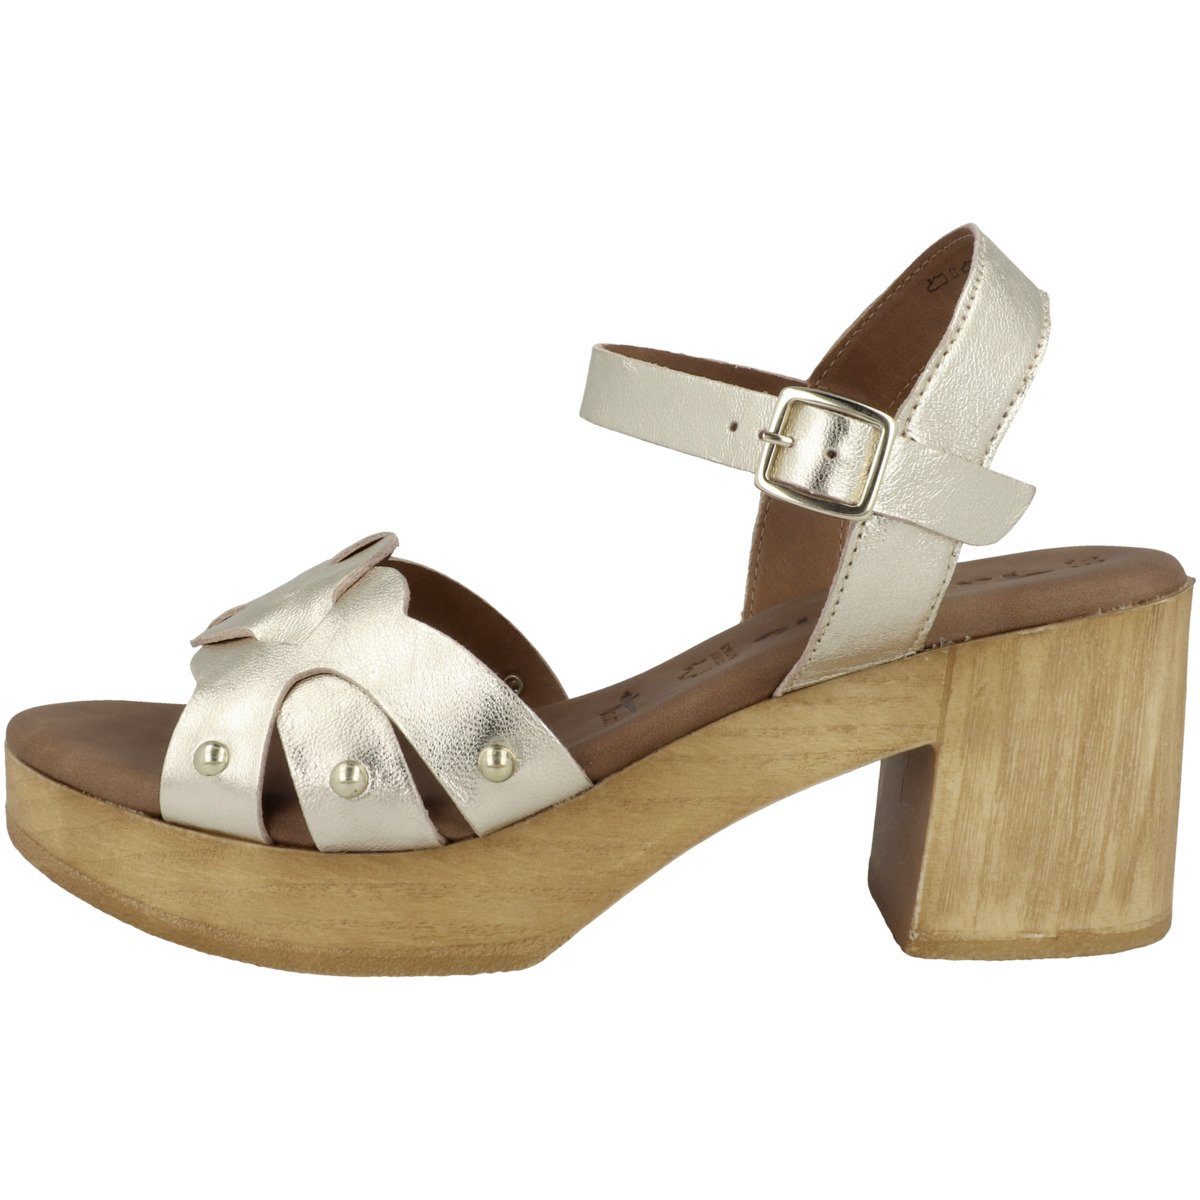 Tamaris »1-28383-20 Damen« Sandalette online kaufen | OTTO